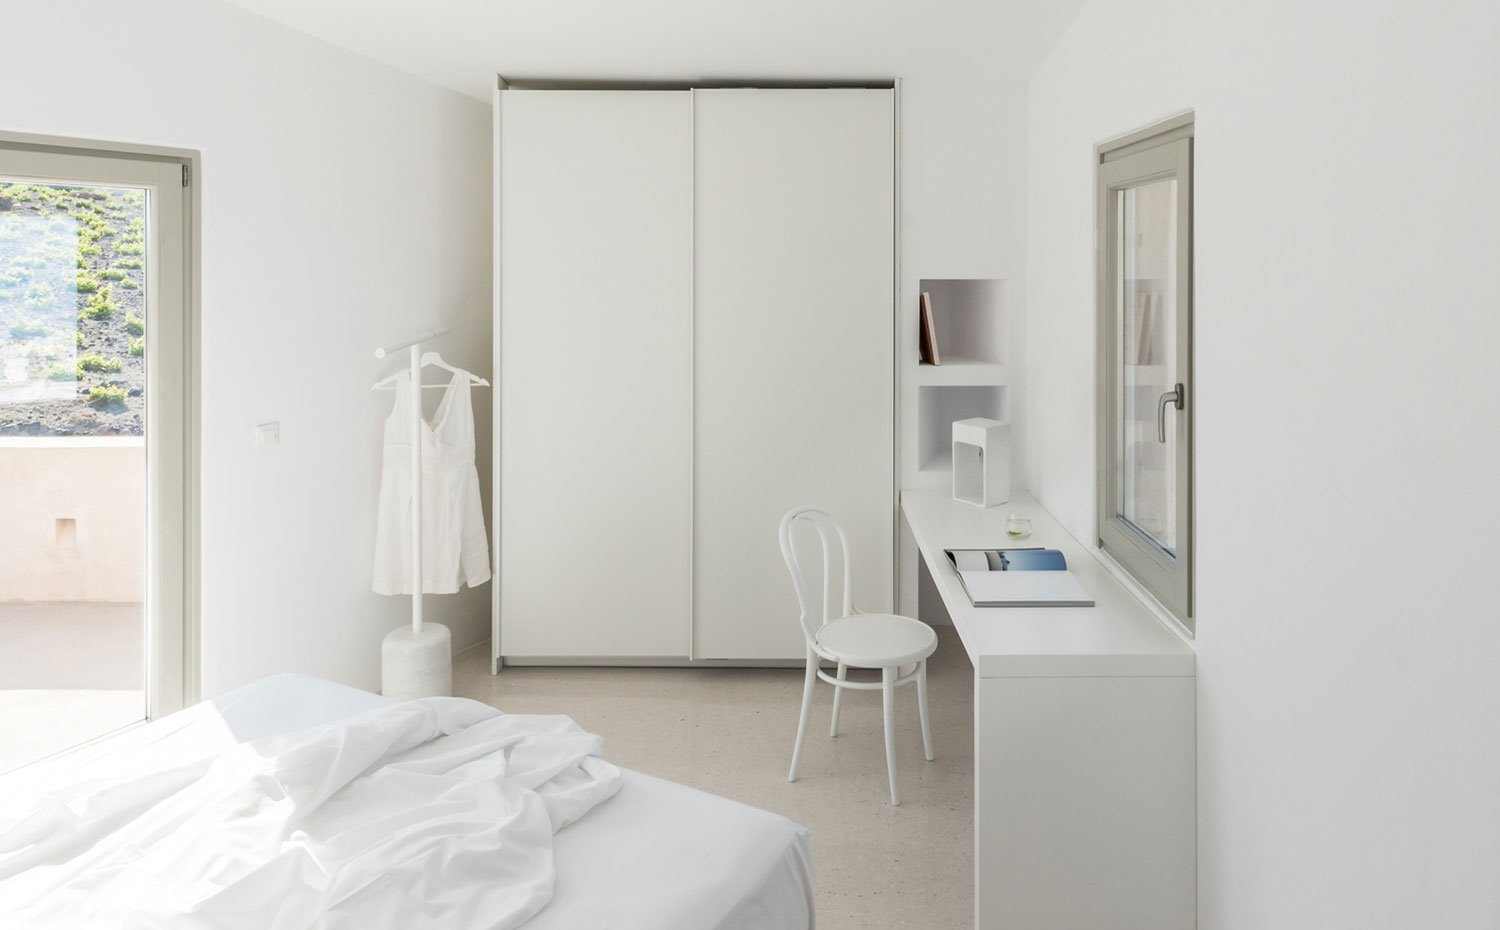 Interior dormitorio con armario corredero, zona de estritorio, colador de pie y cama, todo en blanco